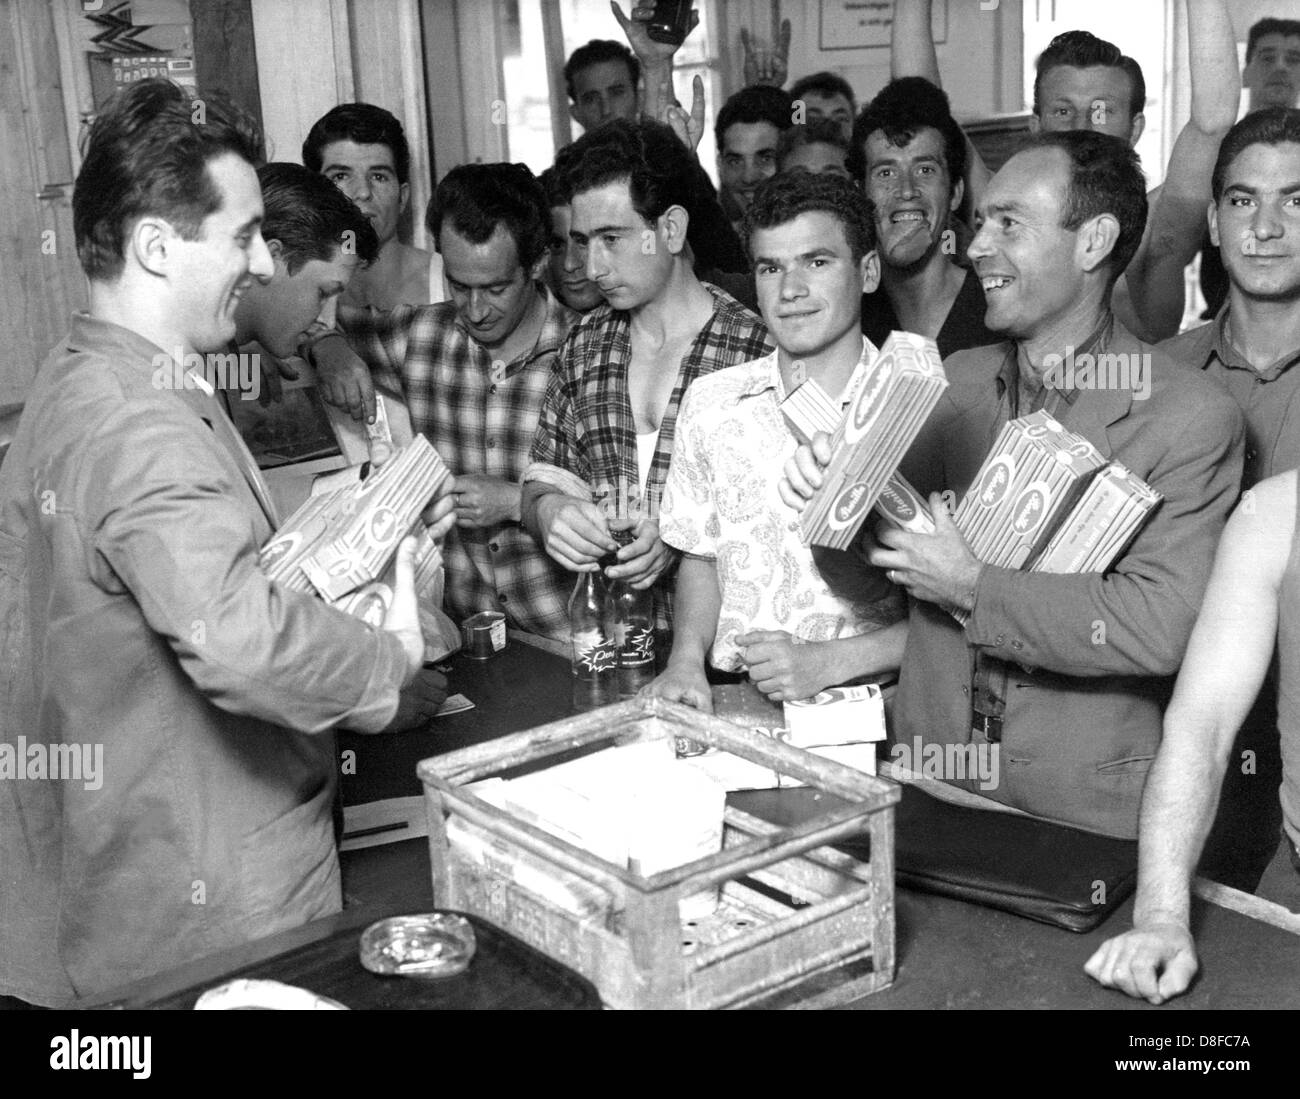 Un groupe d'Italien Gastarbeiter (travailleurs invités surtout en Allemagne dans les années 60 et 70) acheter les spaghettis de Wolfsburg en 1962. Banque D'Images